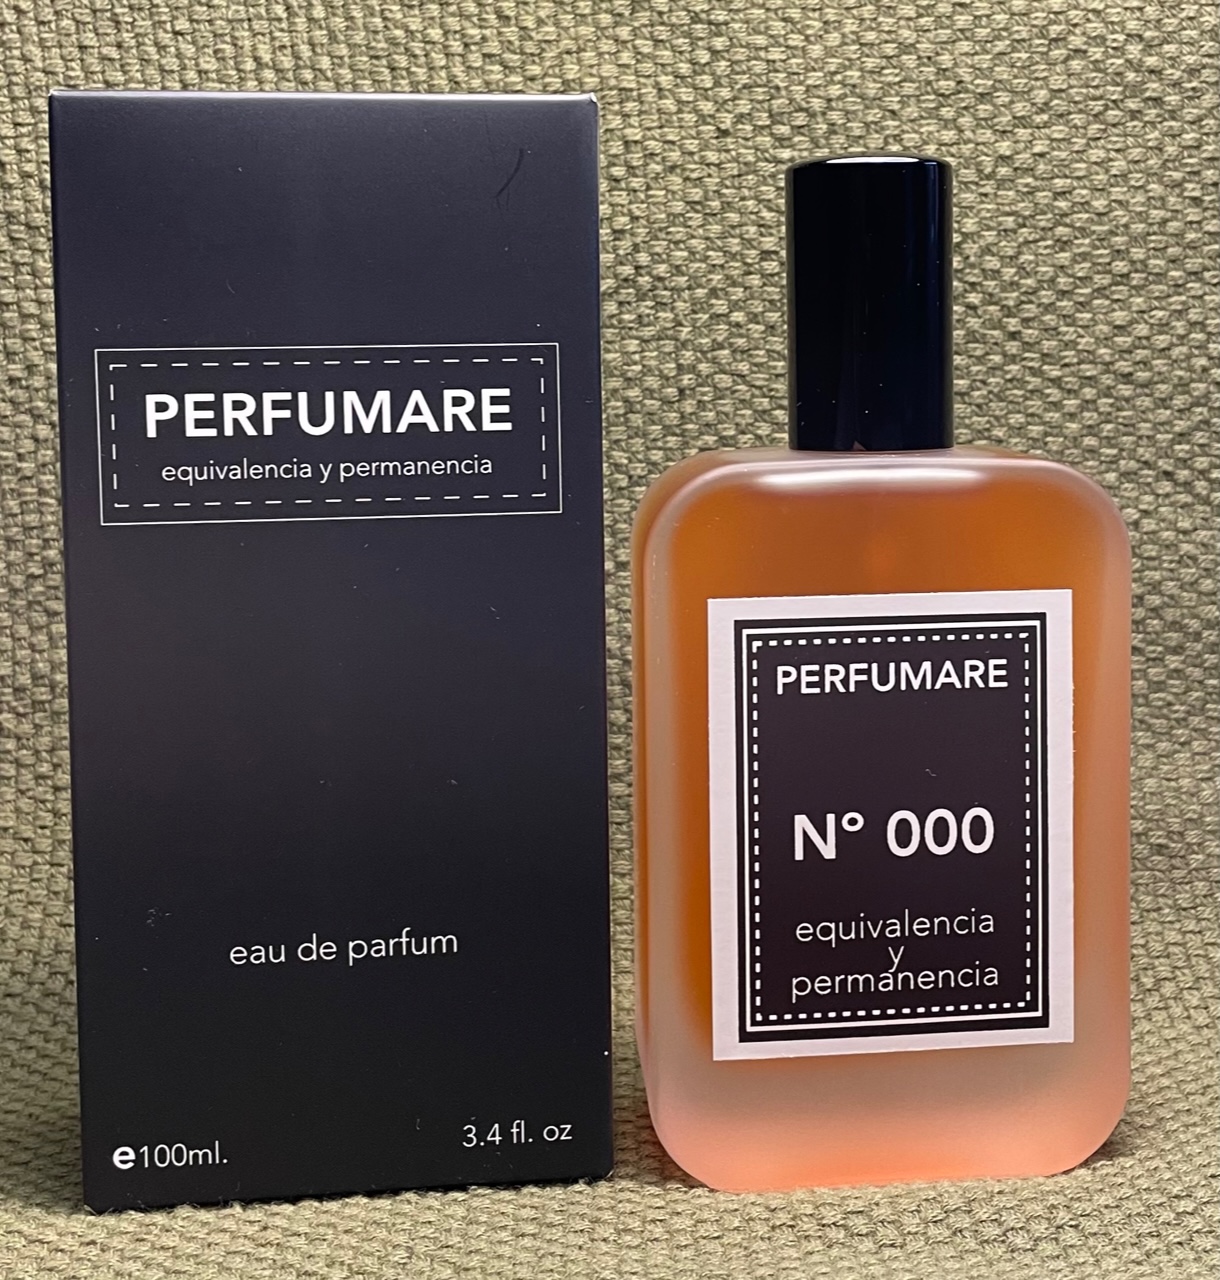 Perfumes de Equivalencia  Más de 600 perfumes en PERFUMARE